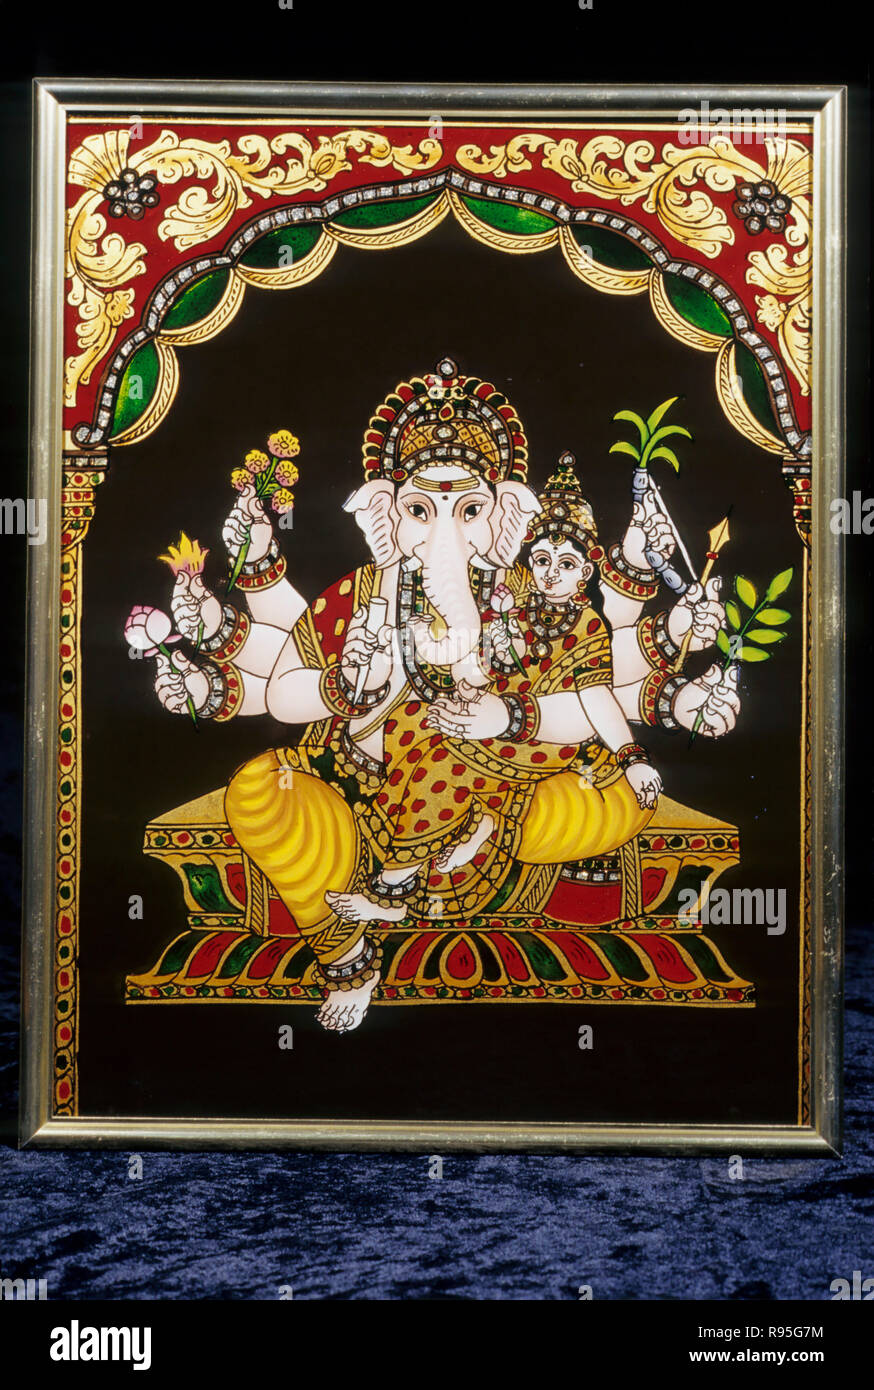 Lord Ganesh Ganpati painting on glass, Tanjore, Tamil Nadu, India ...